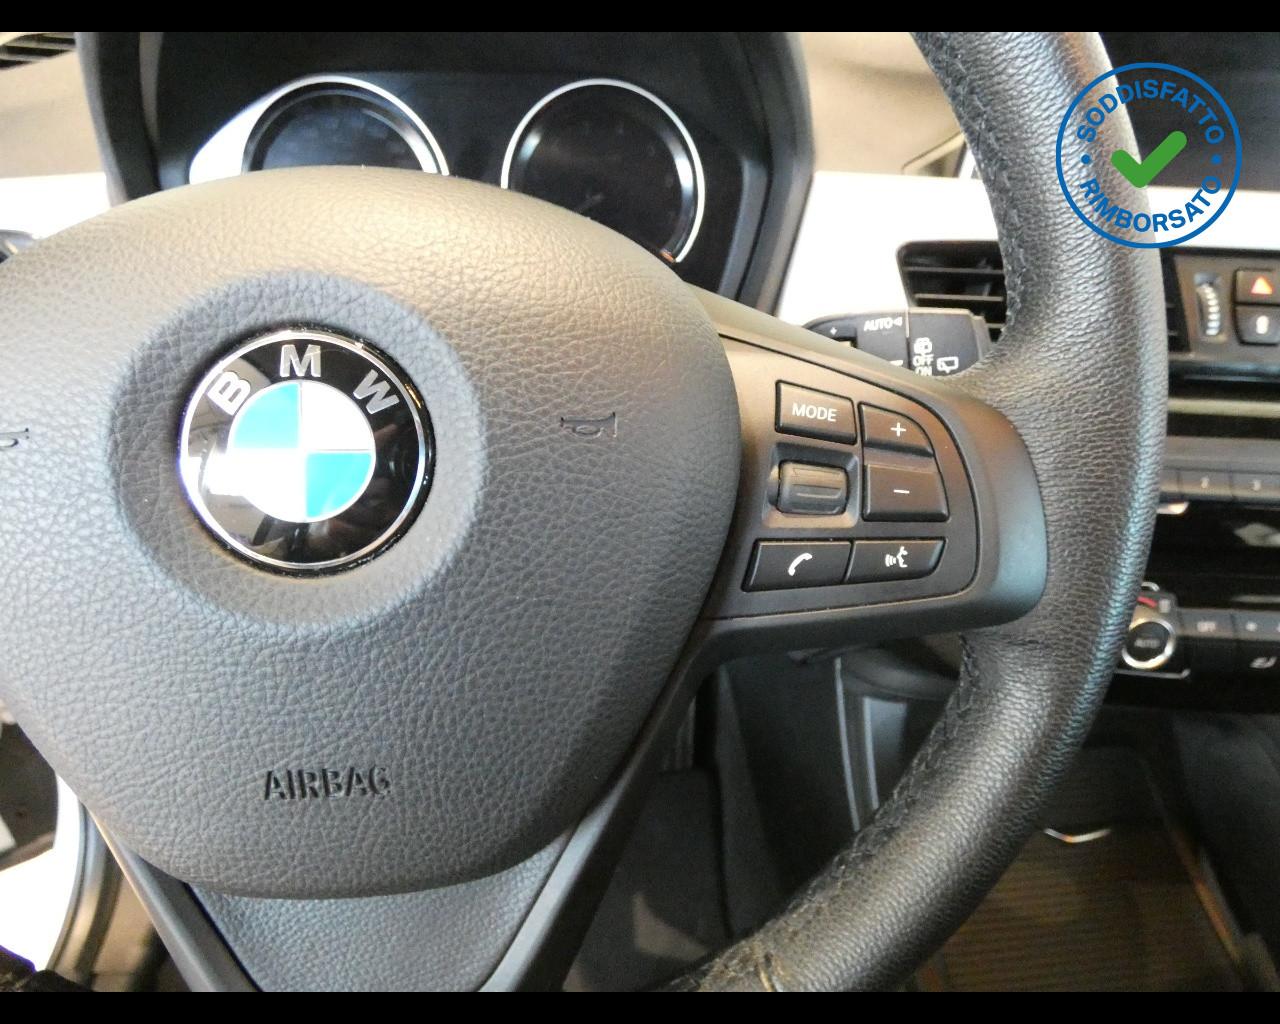 BMW X1 (F48) X1 sDrive18i Advantage